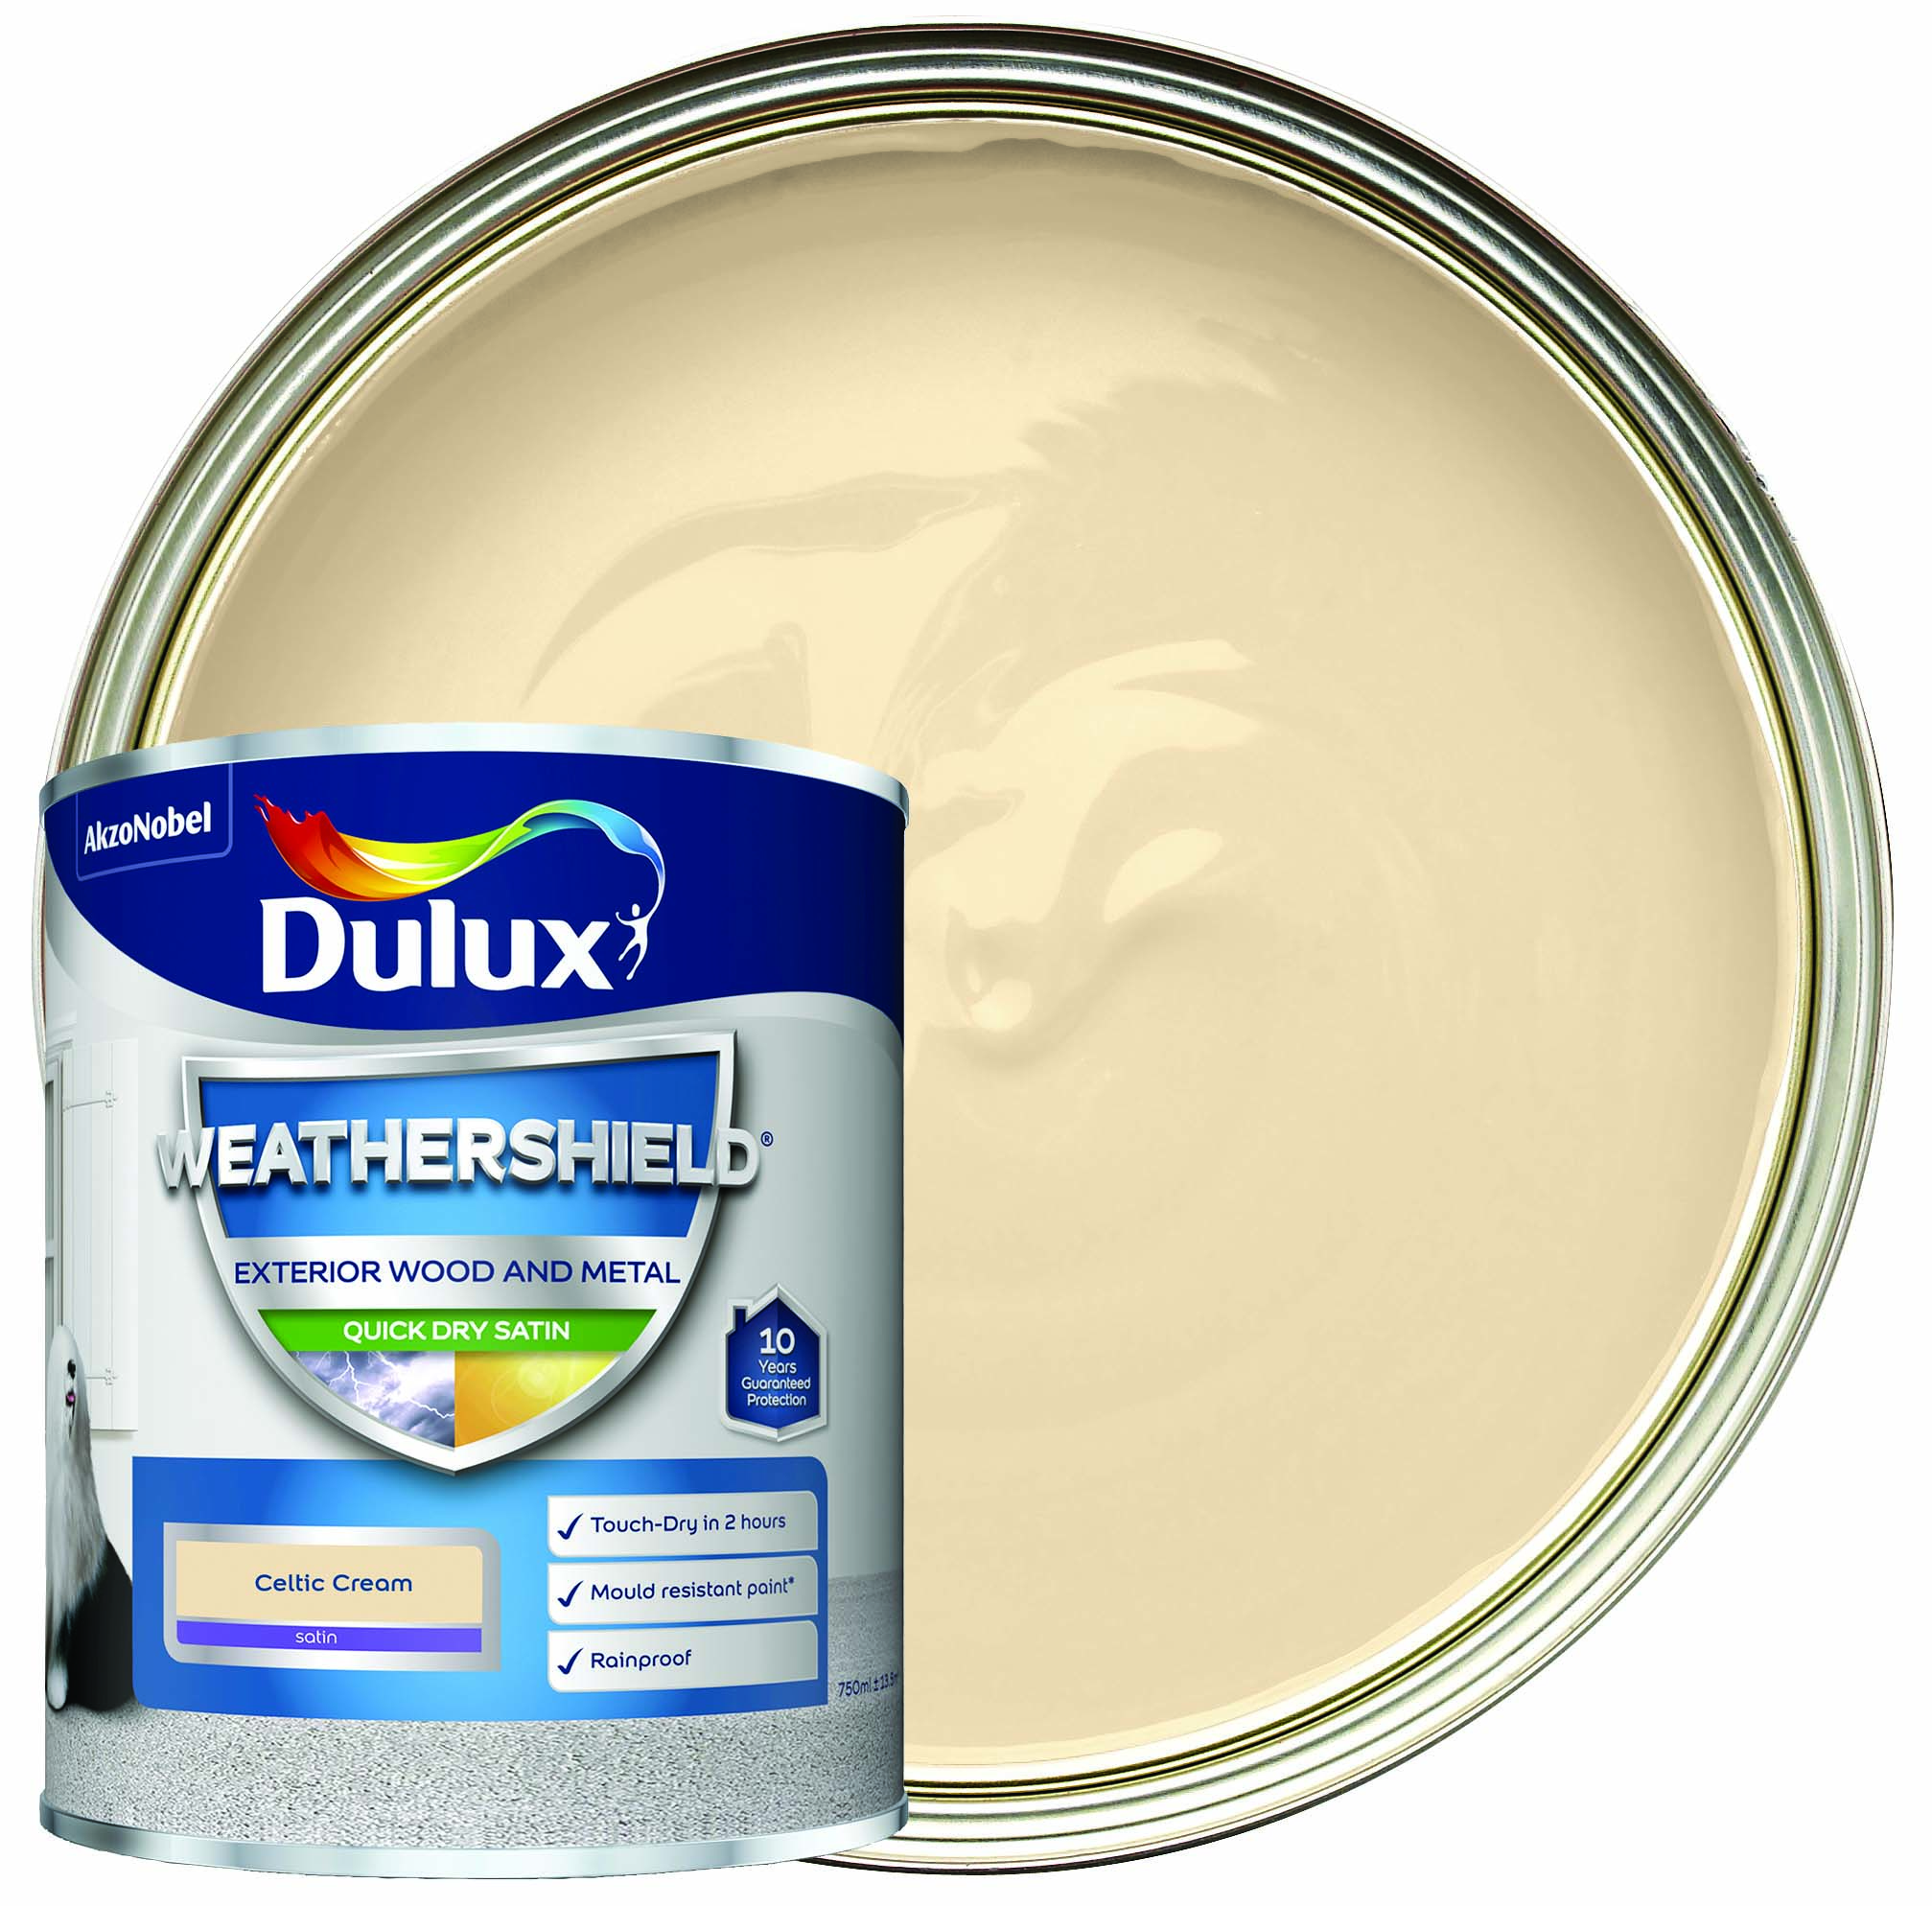 Dulux Weathershield Quick Dry Satin Paint - Celtic